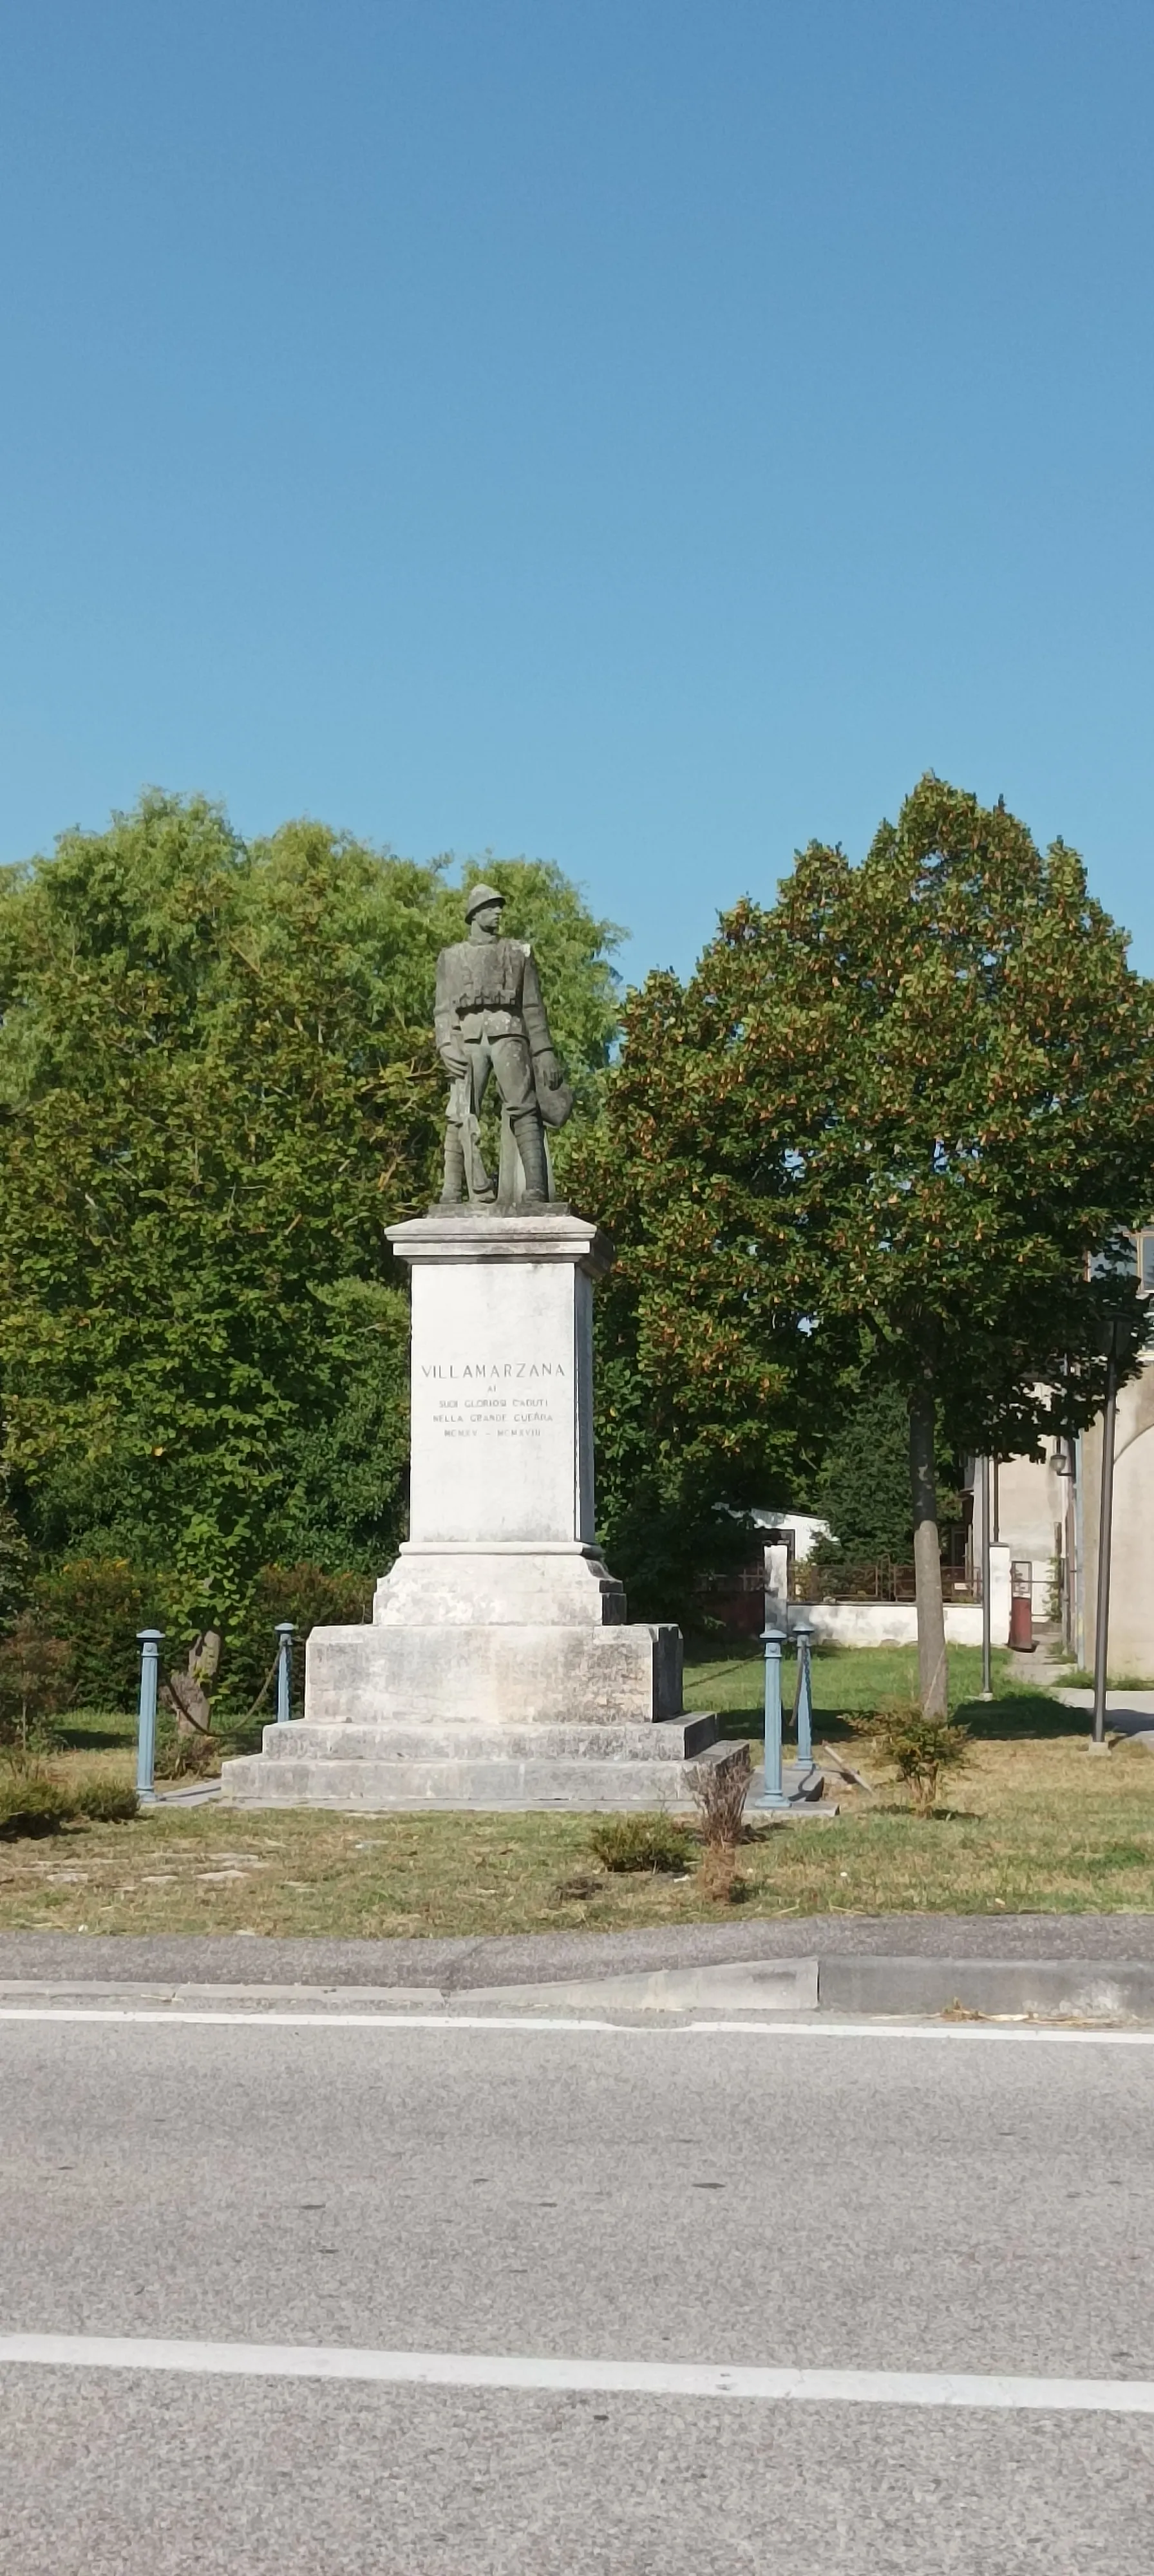 Photo showing: Villamarzana, il monumento commemorativo dedicato ai concittadini caduti in guerra.